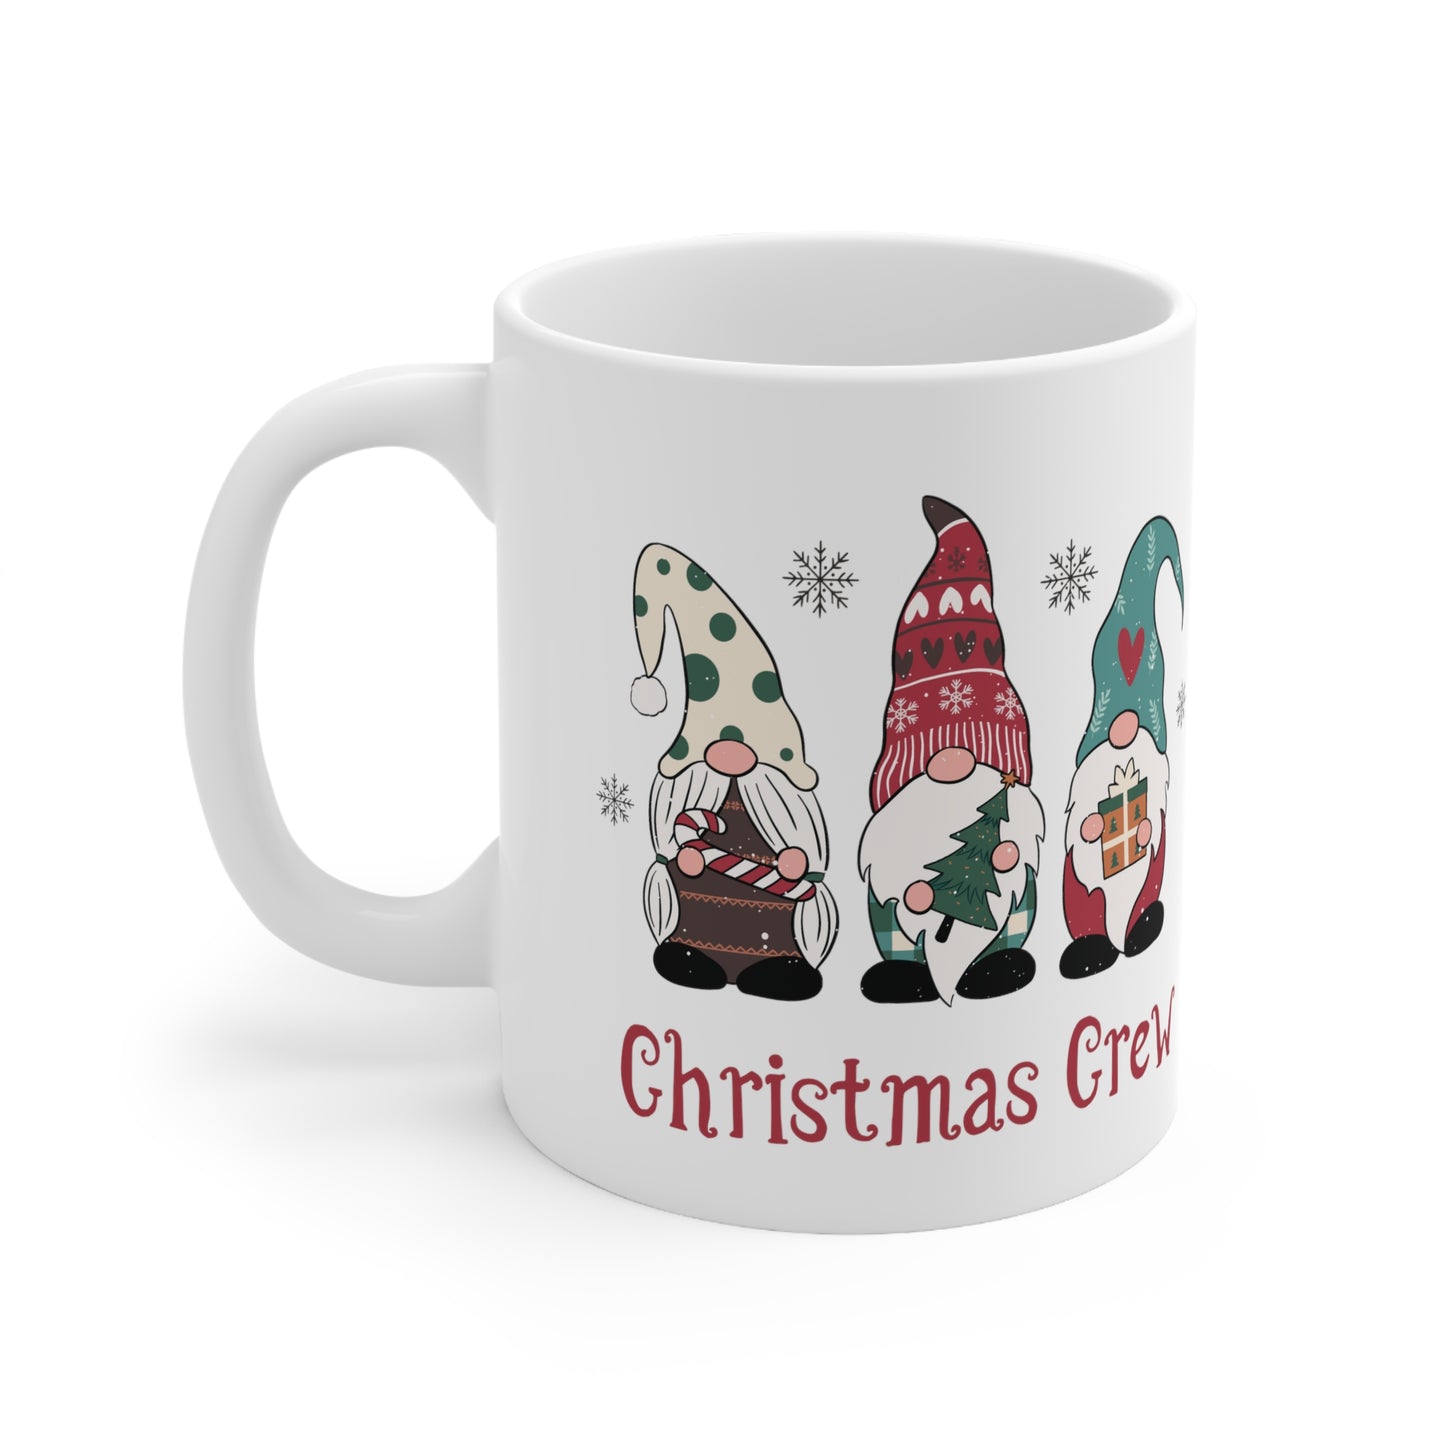 Christmas Crew | Gonks | Christmas Gnomes - Christmas Mug